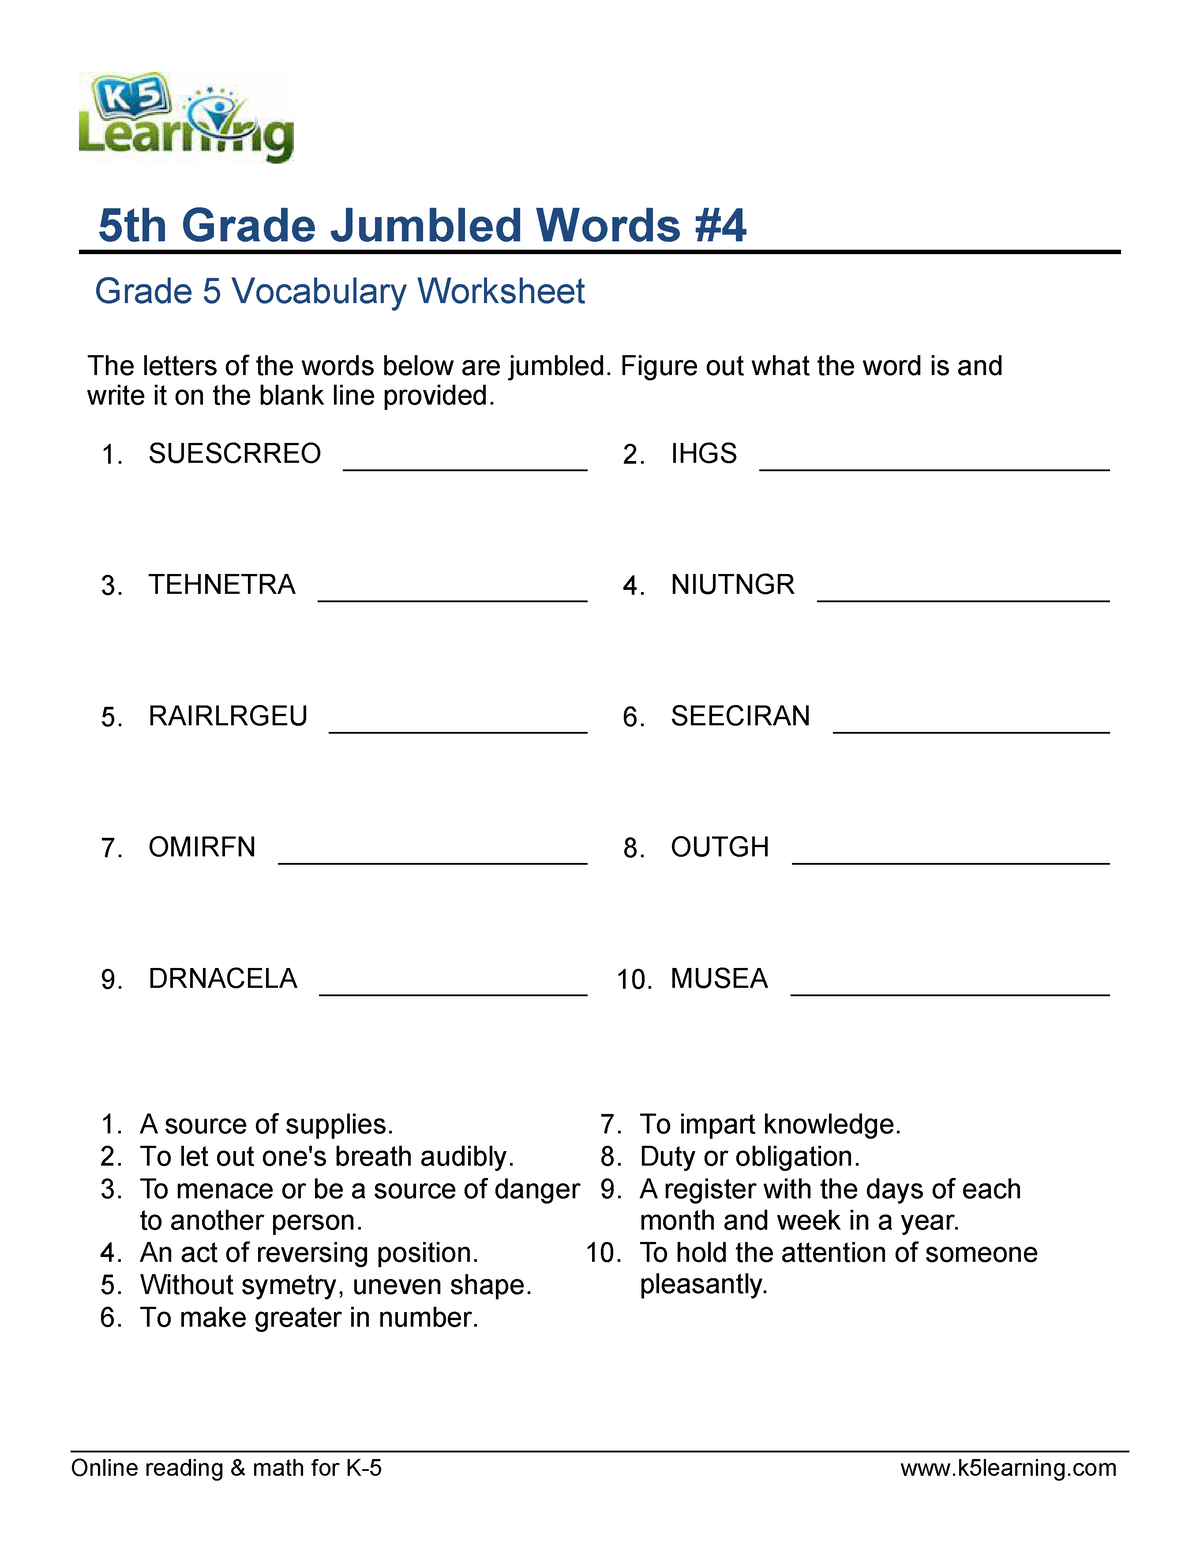 Jumbled Words Worksheets For Grade 5